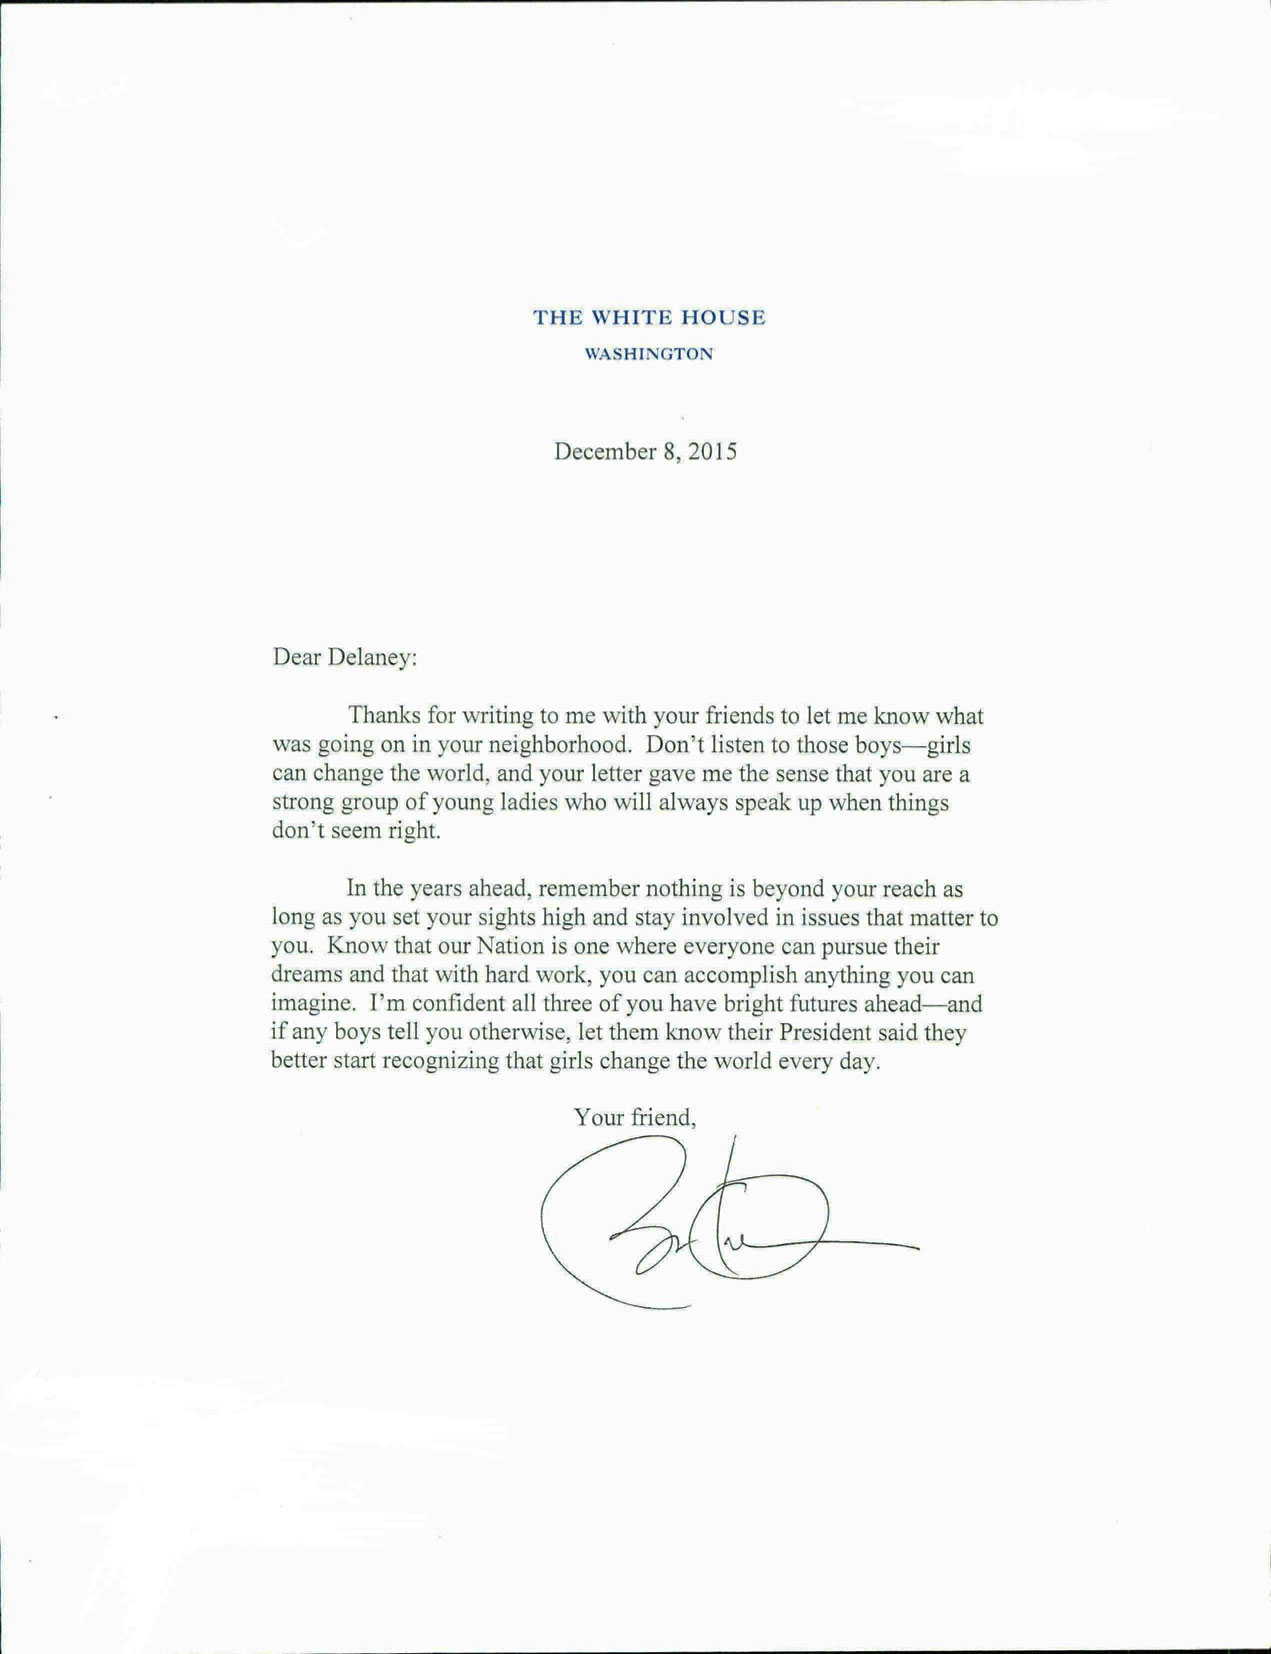 President Obama's response